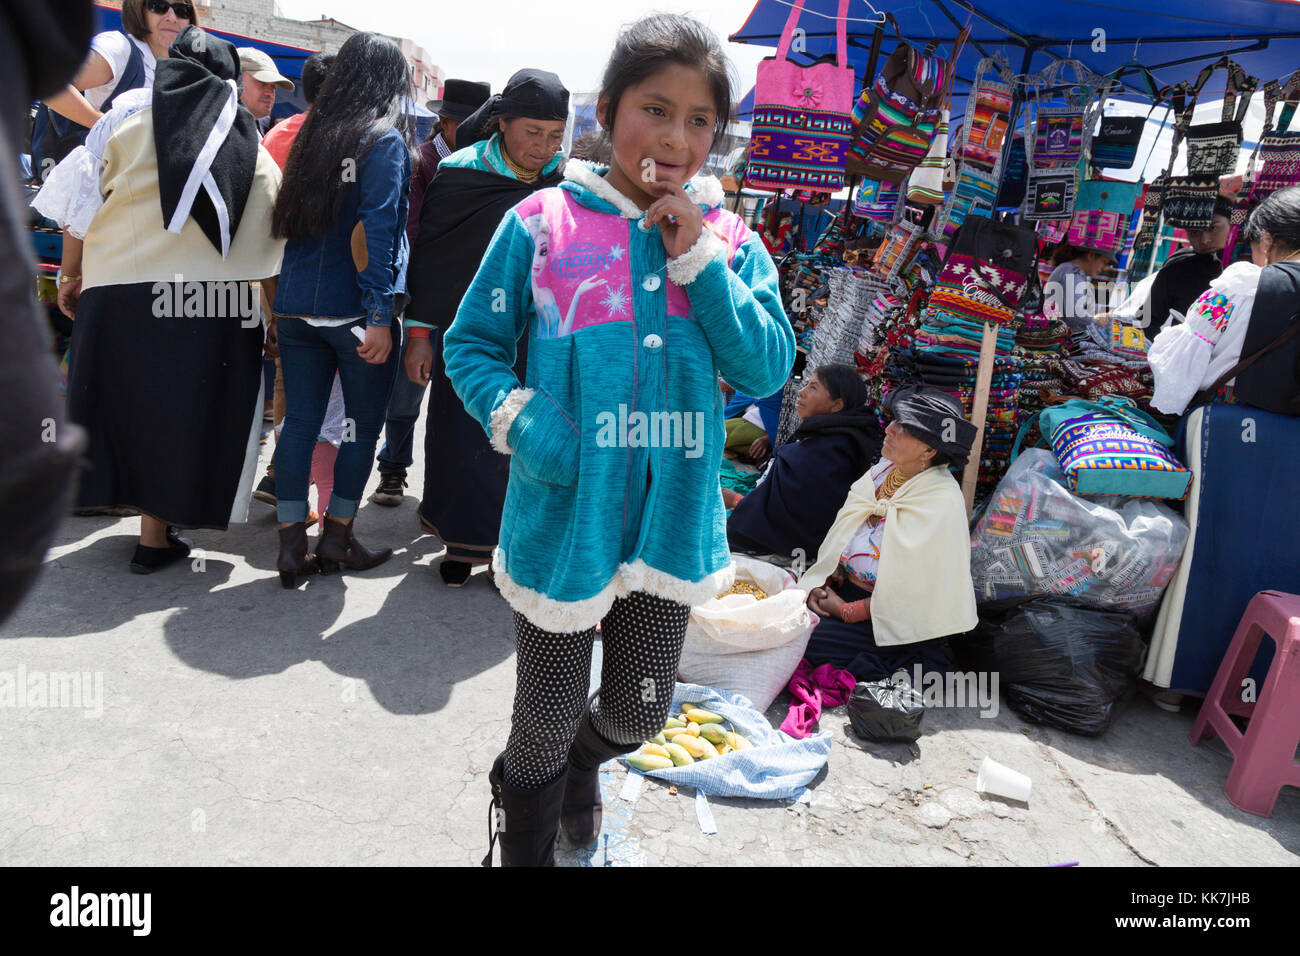 Ecuador child - young Ecuadorean girl aged 10 years, Otavalo market, Otavalo, Ecuador, South America Stock Photo